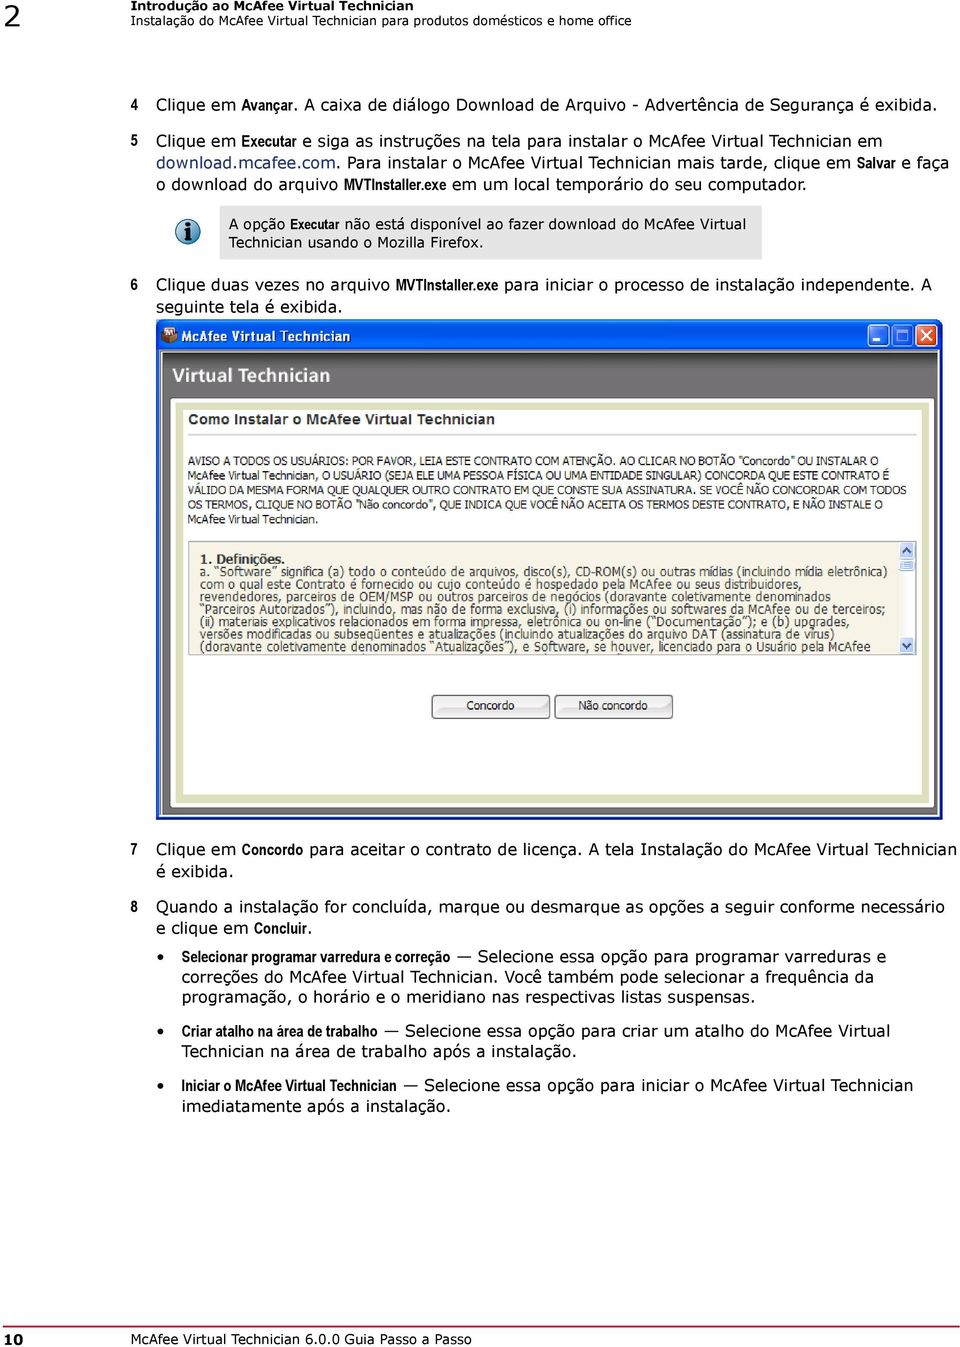 Para instalar o McAfee Virtual Technician mais tarde, clique em Salvar e faça o download do arquivo MVTInstaller.exe em um local temporário do seu computador.